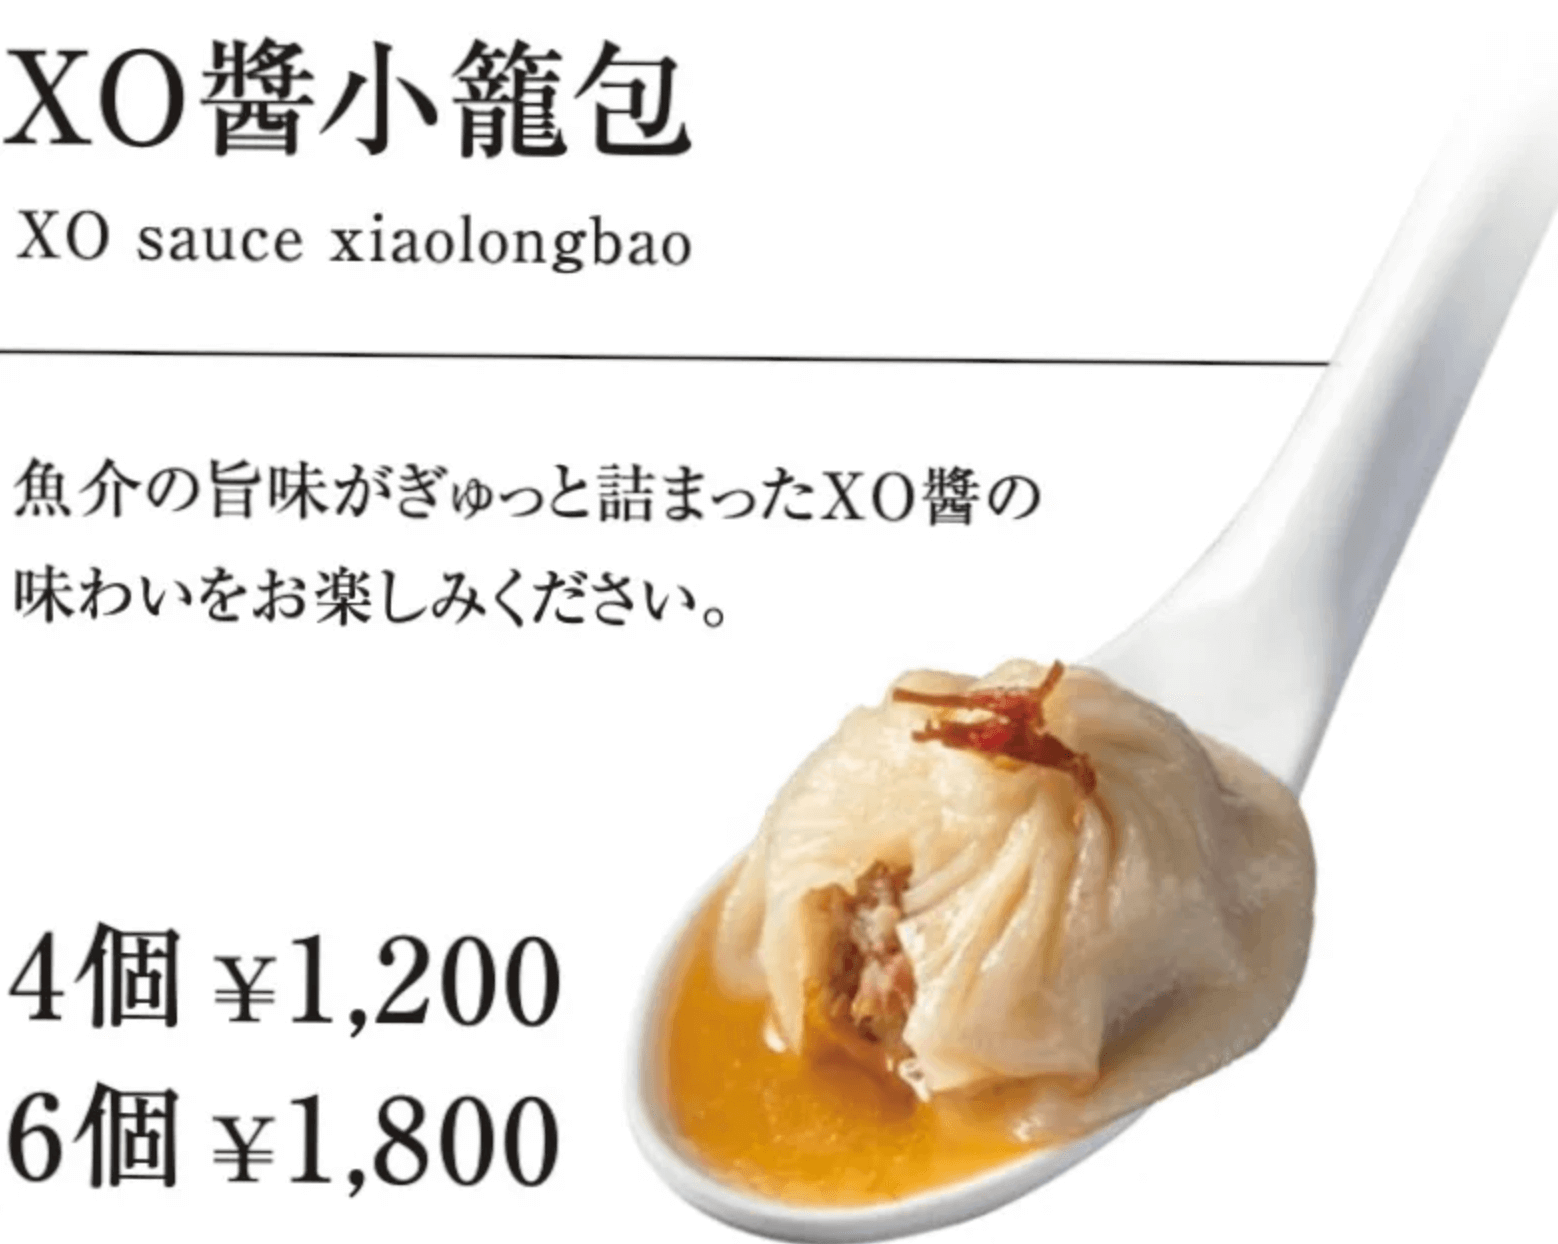 台湾料理 REAL台北 札幌パルコ店の『XO醬小籠包』